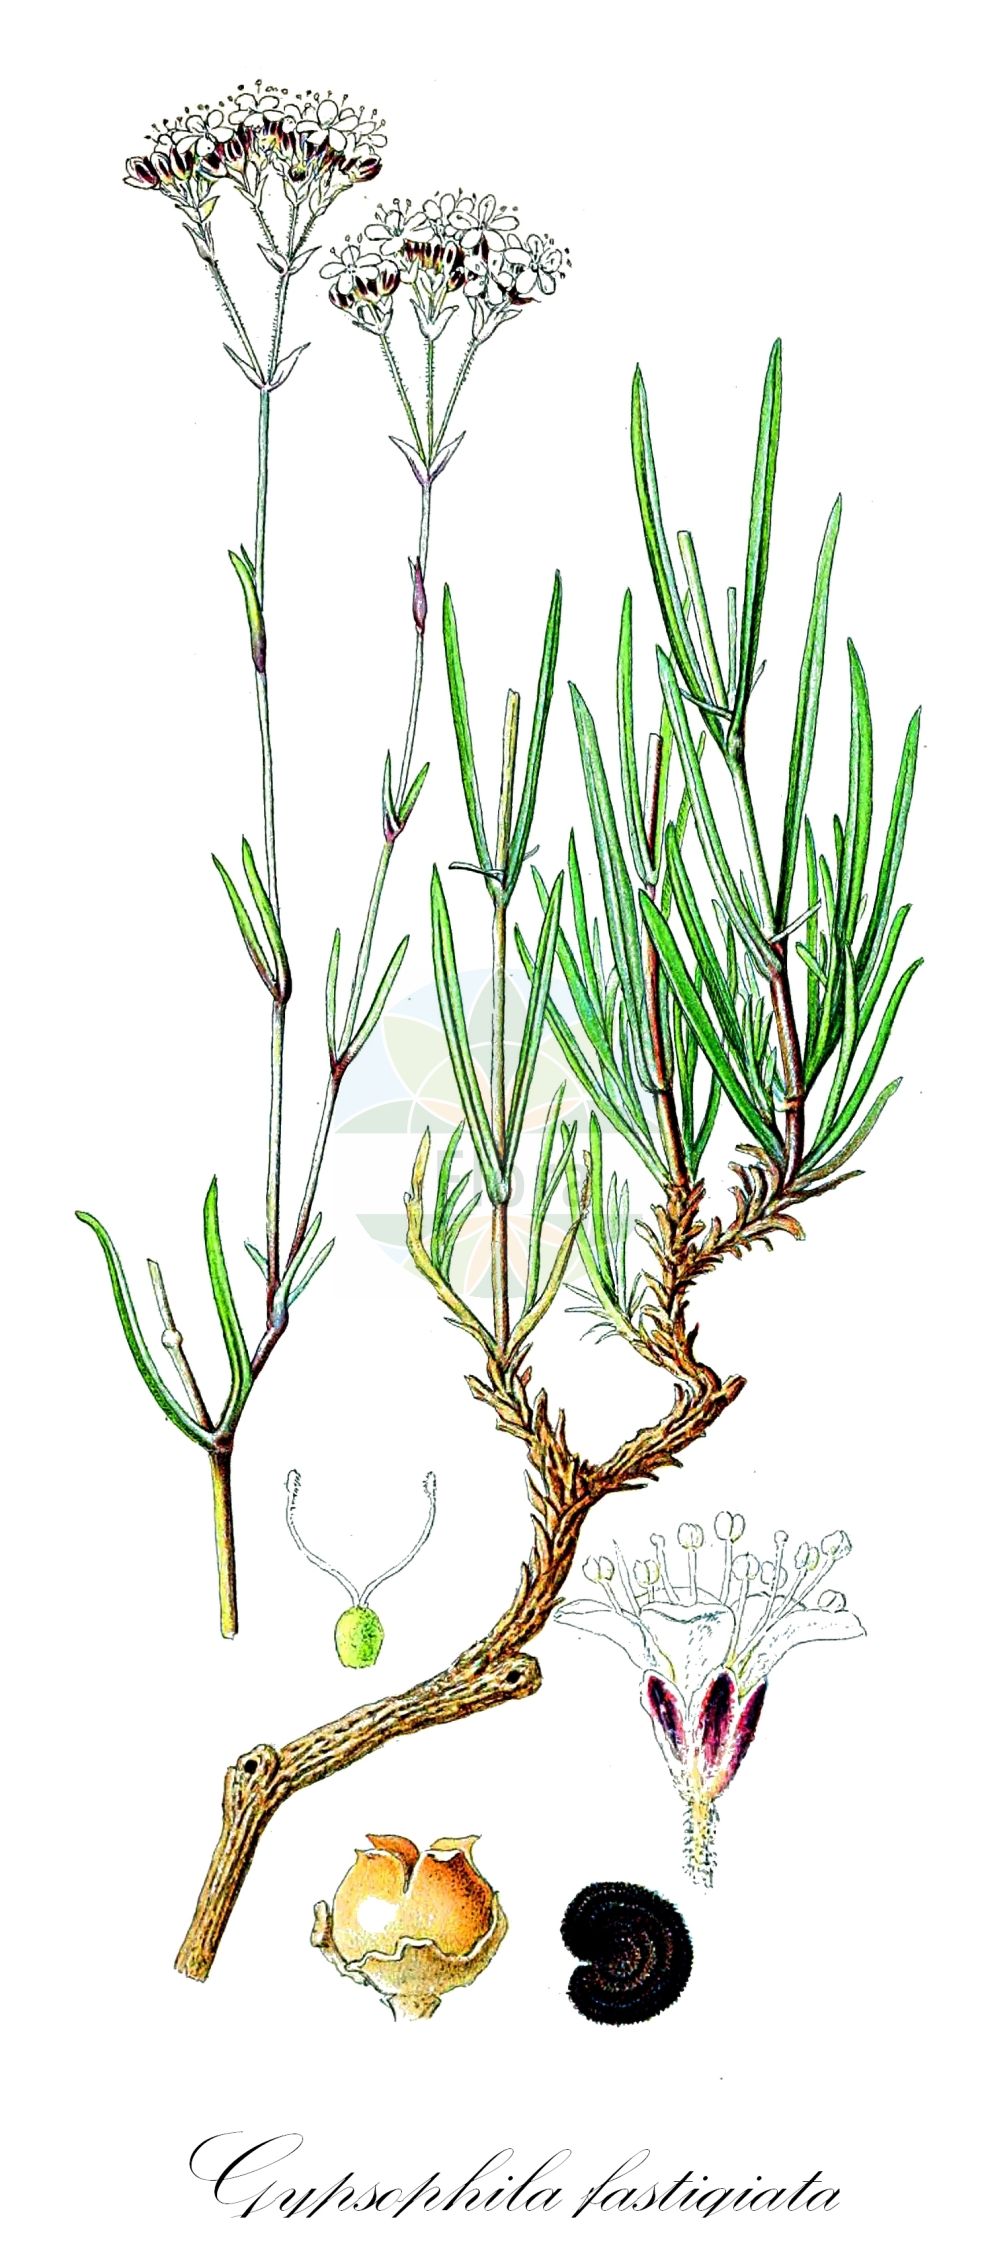 Historische Abbildung von Gypsophila fastigiata (Ebensträußiges Gipskraut - Fastigiate Gypsophila). Das Bild zeigt Blatt, Bluete, Frucht und Same. ---- Historical Drawing of Gypsophila fastigiata (Ebensträußiges Gipskraut - Fastigiate Gypsophila). The image is showing leaf, flower, fruit and seed.(Gypsophila fastigiata,Ebensträußiges Gipskraut,Fastigiate Gypsophila,Gypsophila dichotoma,Gypsophila fastigiata,Gypsophila fastigiata subsp. pulposa,Ebenstraeussiges Gipskraut,Sand-Gipskraut,Fastigiate Gypsophila,Gypsophila,Gipskraut,Baby's-breath,Caryophyllaceae,Nelkengewächse,Pink family,Blatt,Bluete,Frucht,Same,leaf,flower,fruit,seed,Lindman (1901-1905))